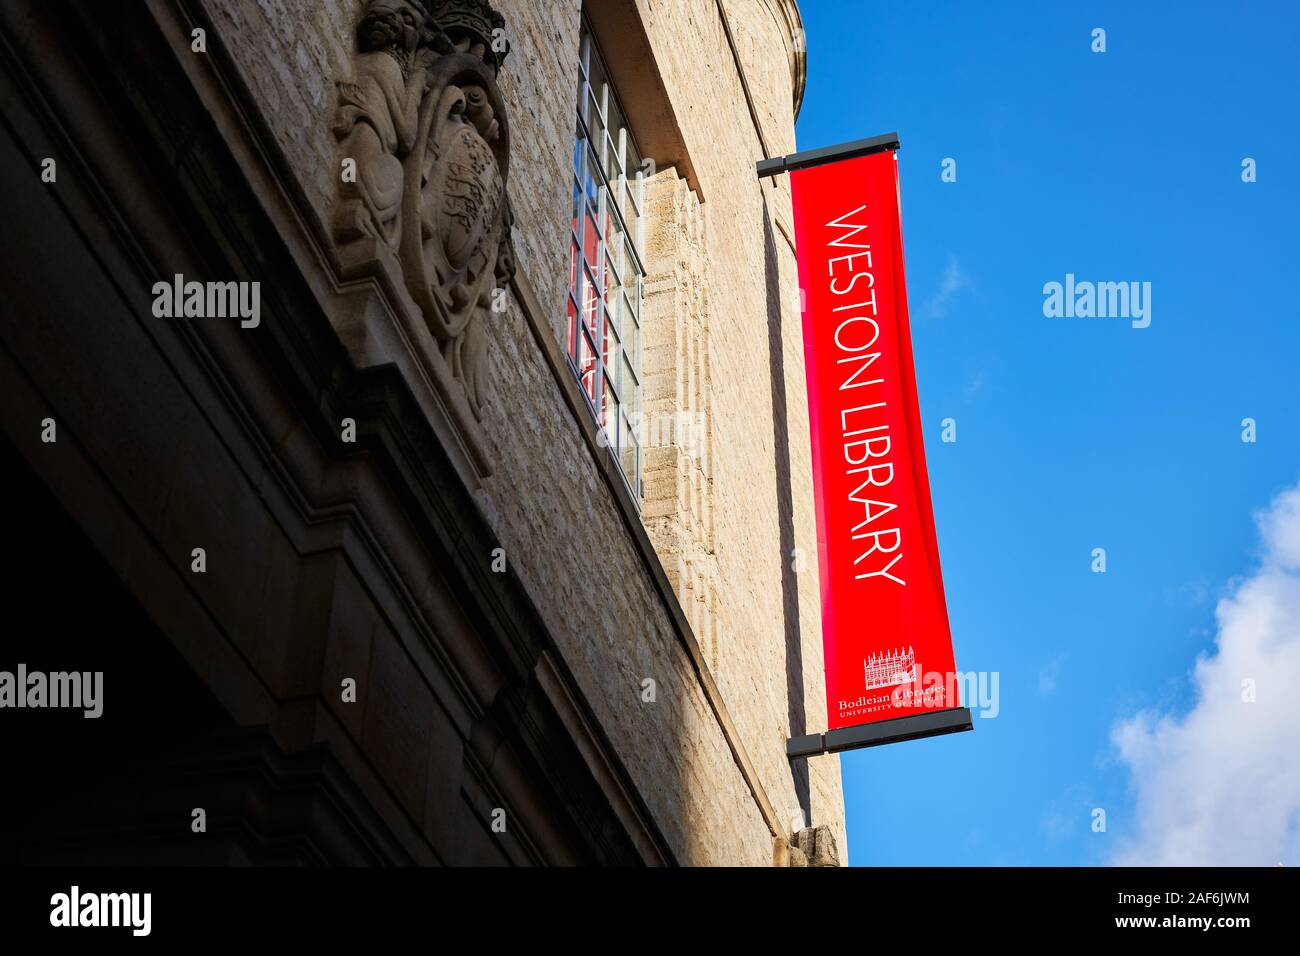 Panneau rouge sur le mur extérieur de la bibliothèque de Weston, Université d'Oxford, en Angleterre. Banque D'Images